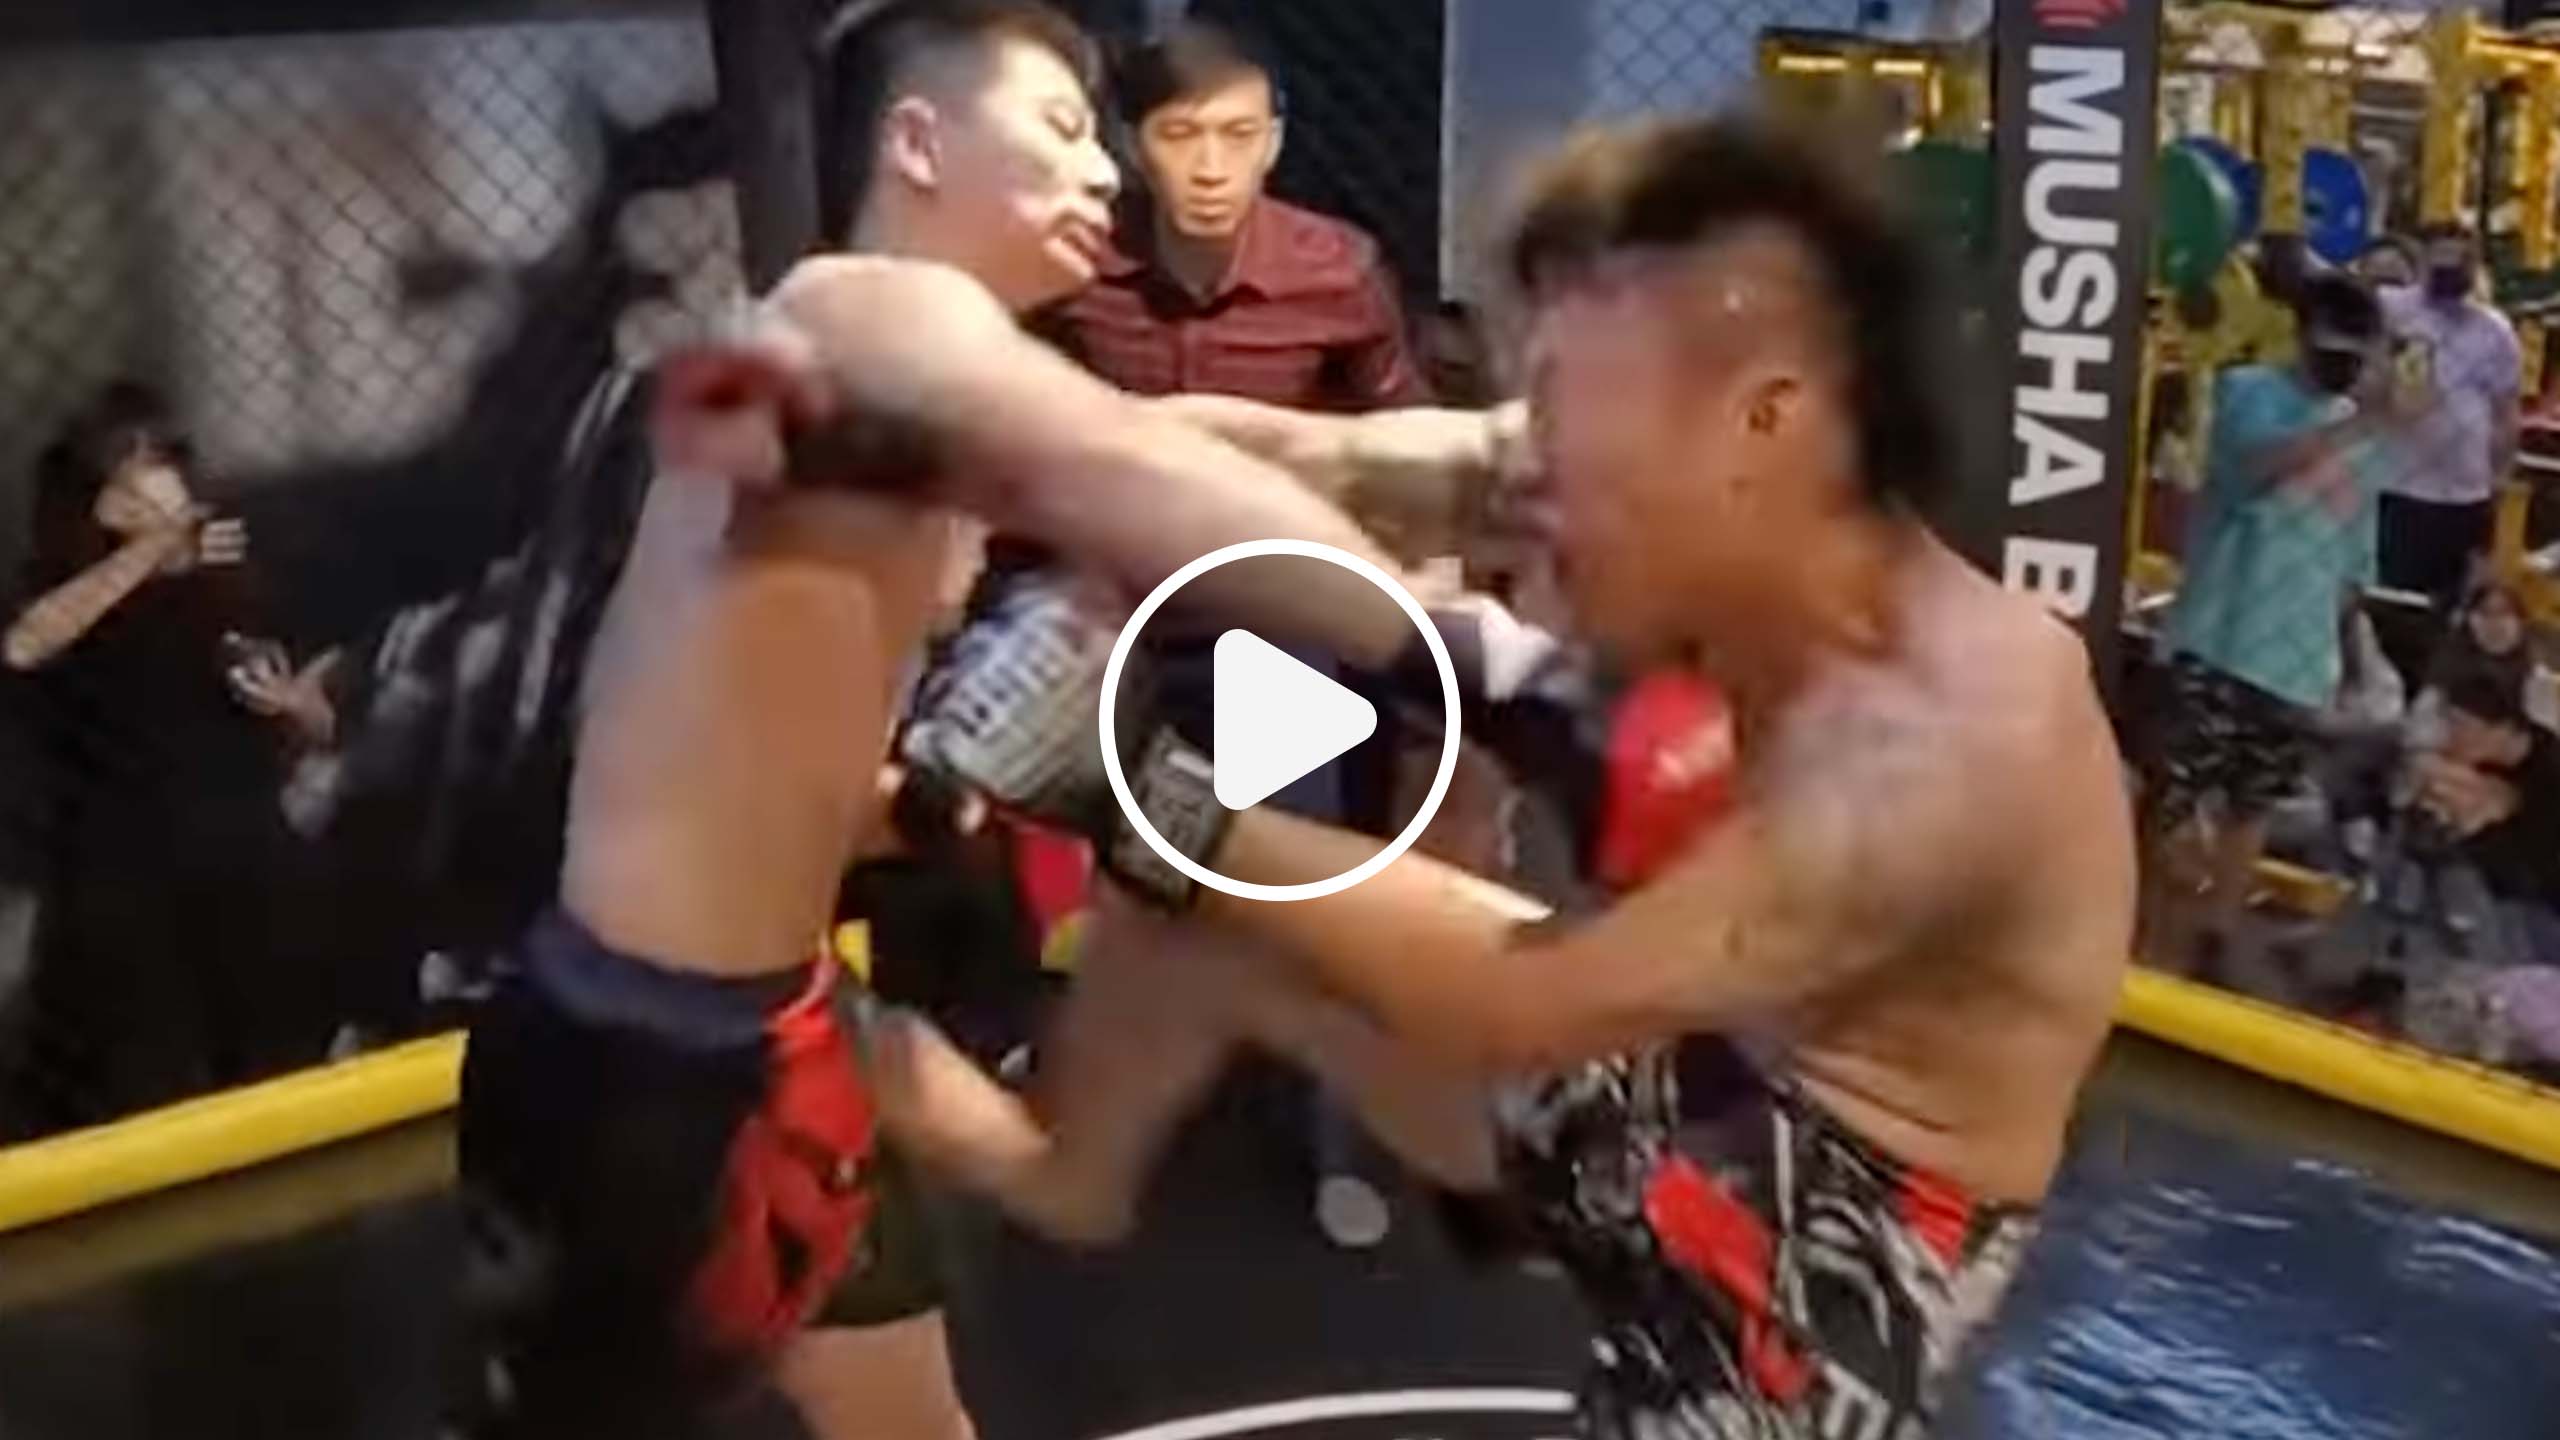 Un combattant de taekwondo affronte un combattant de MMA, il le dérouille